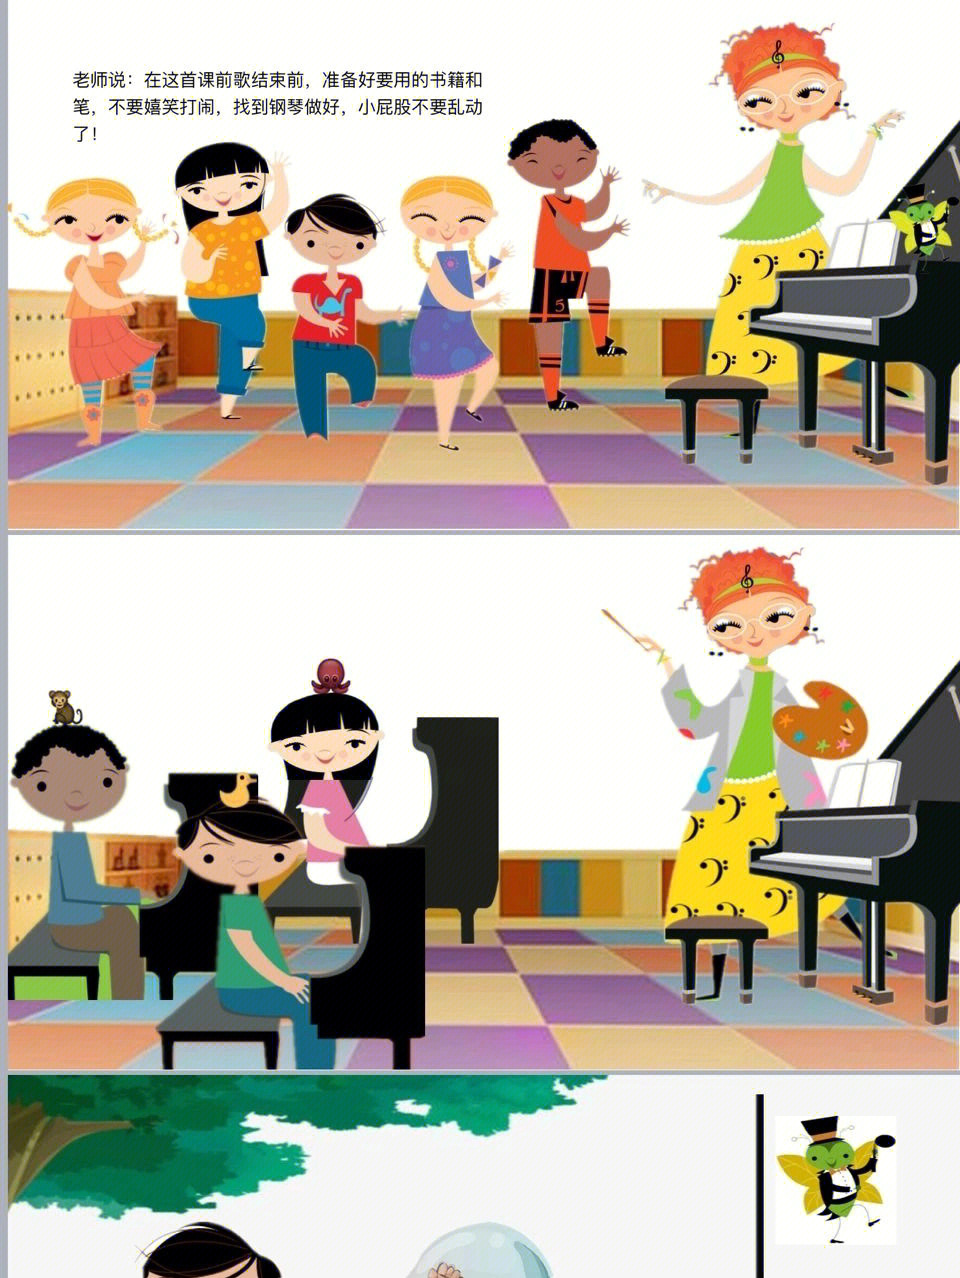 钢琴原理动画演示图图片